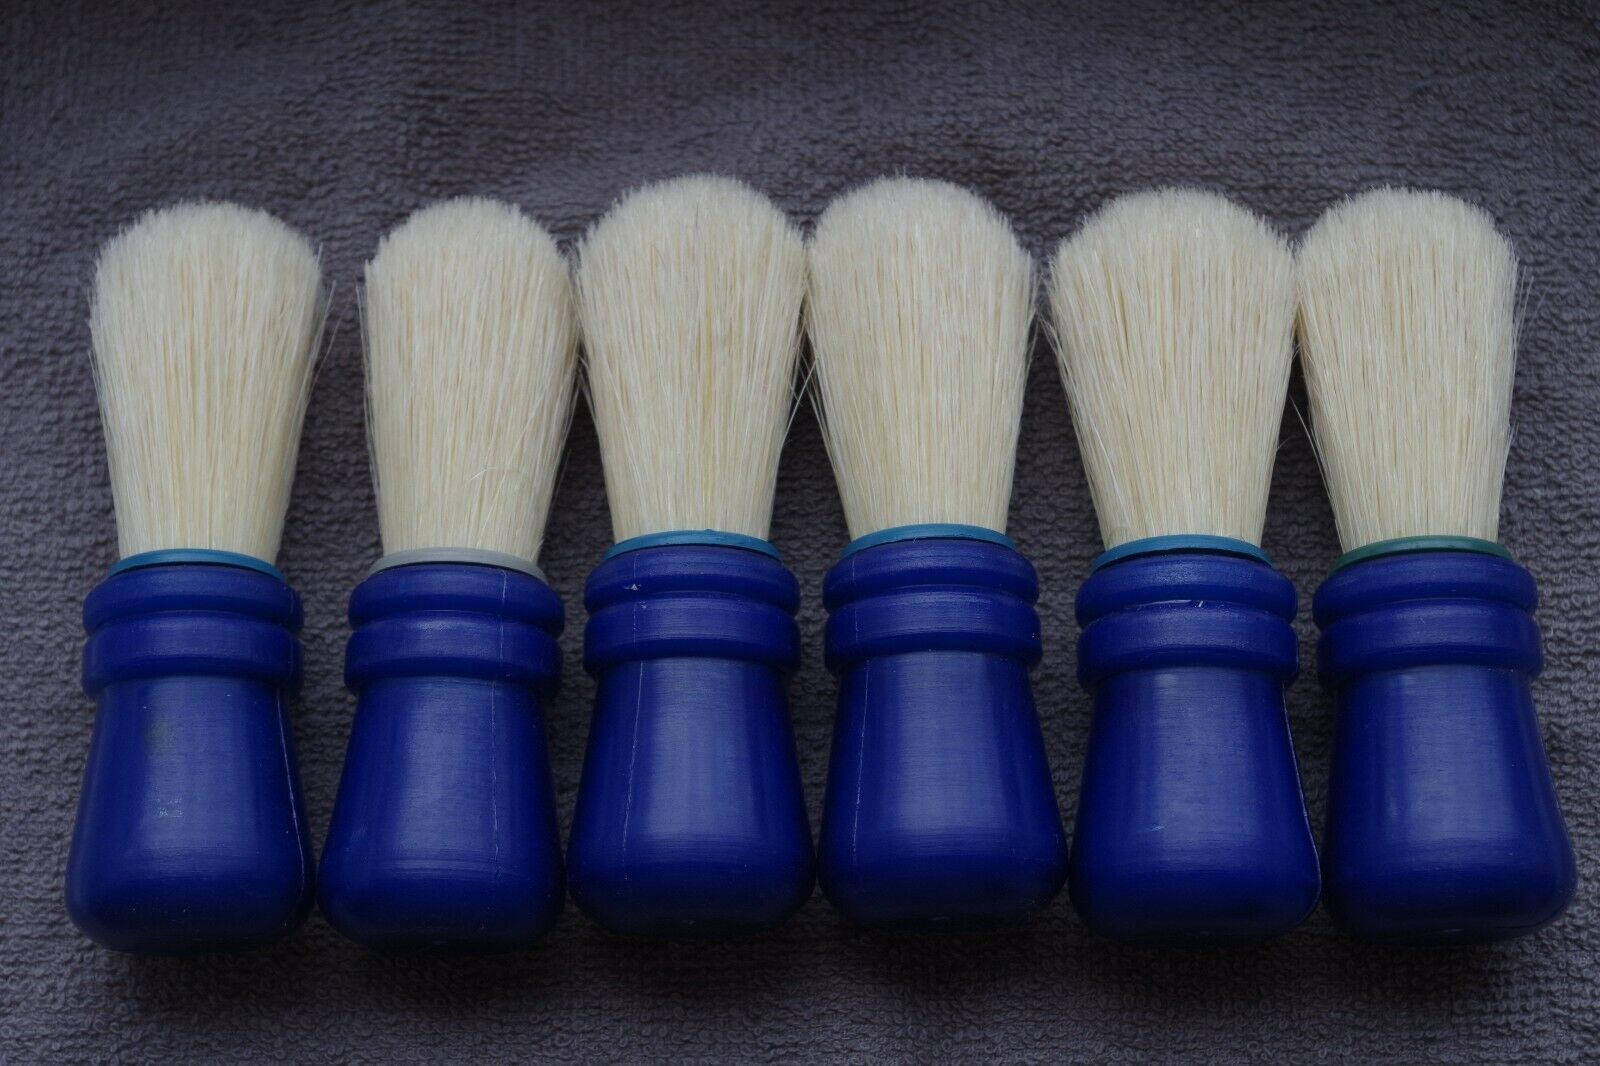 Russian Shaving Brush (plastic) 6 Pieces